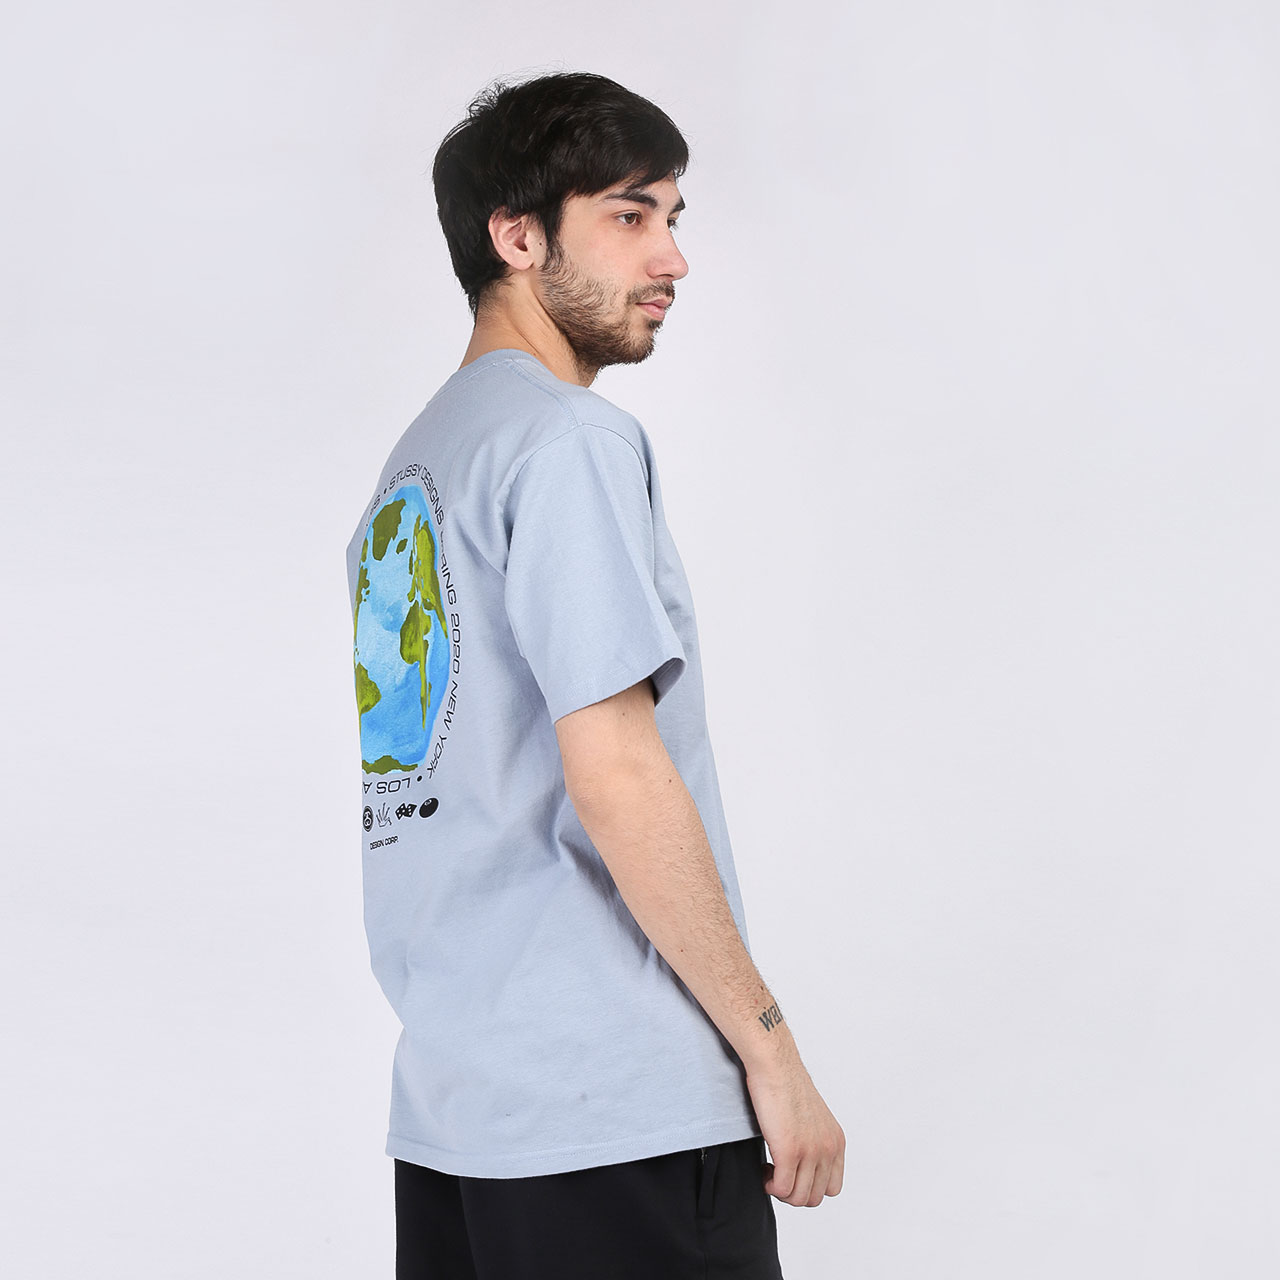 мужская голубая футболка Stussy T-SHIRT GLOBAL DESIGN 1904506-slate - цена, описание, фото 2